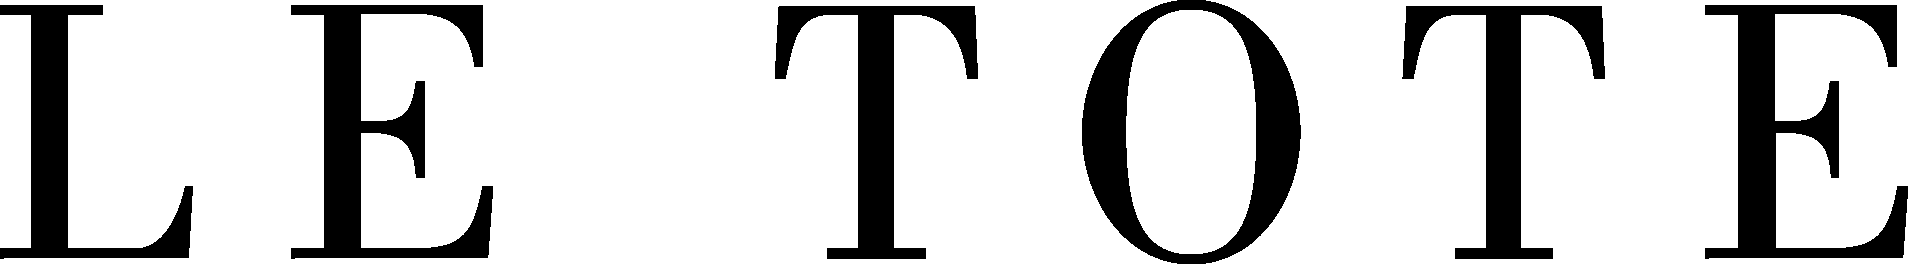 Le Tote Logo - SVG, PNG, AI, EPS Vectors SVG, PNG, AI, EPS Vectors